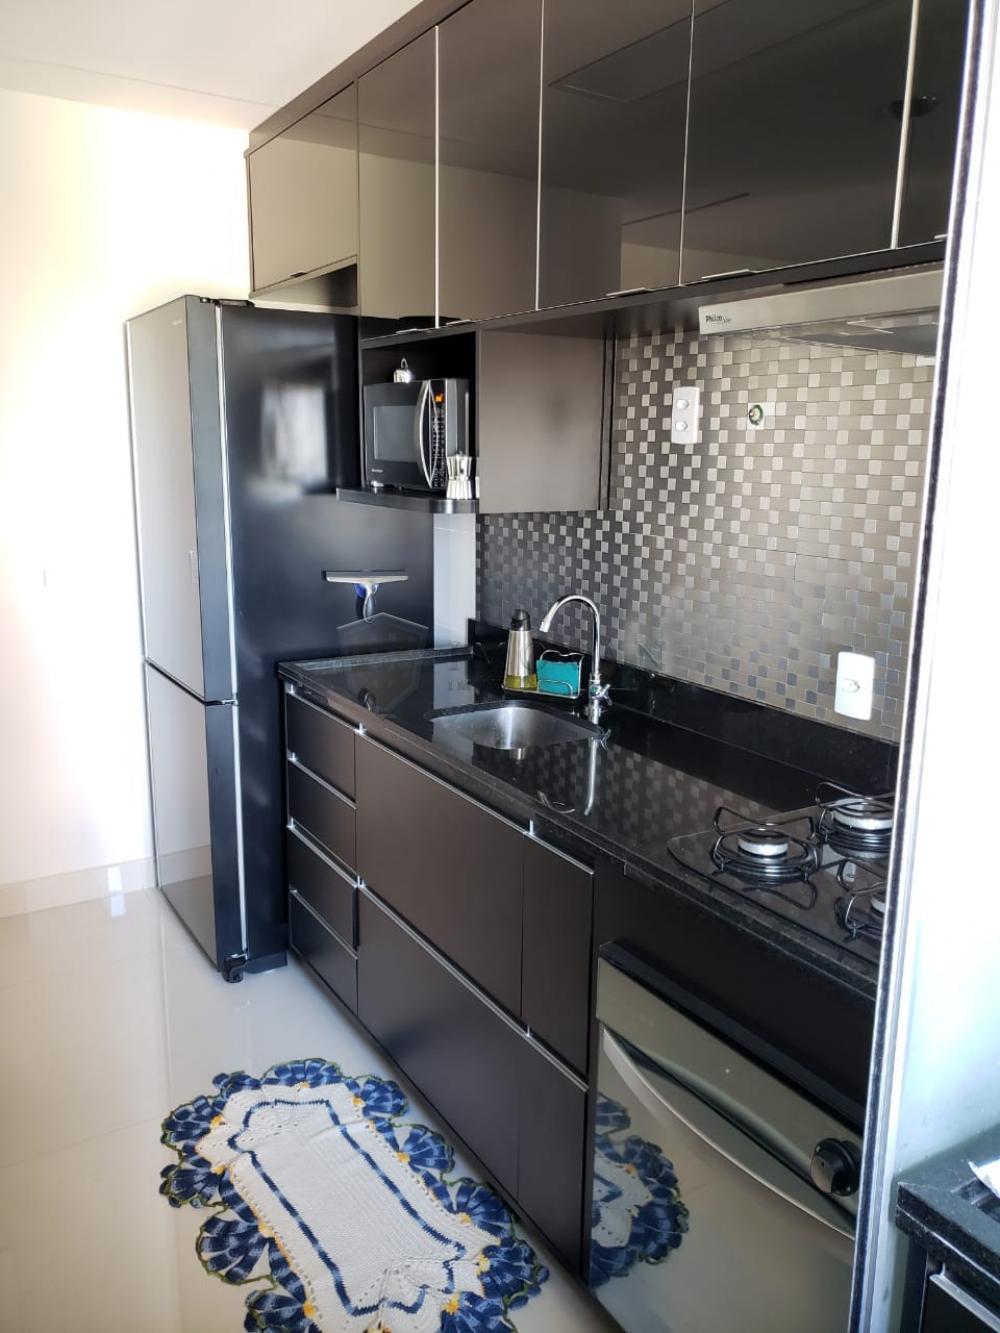 Comprar Apartamento / Padrão em Ribeirão Preto R$ 590.000,00 - Foto 3